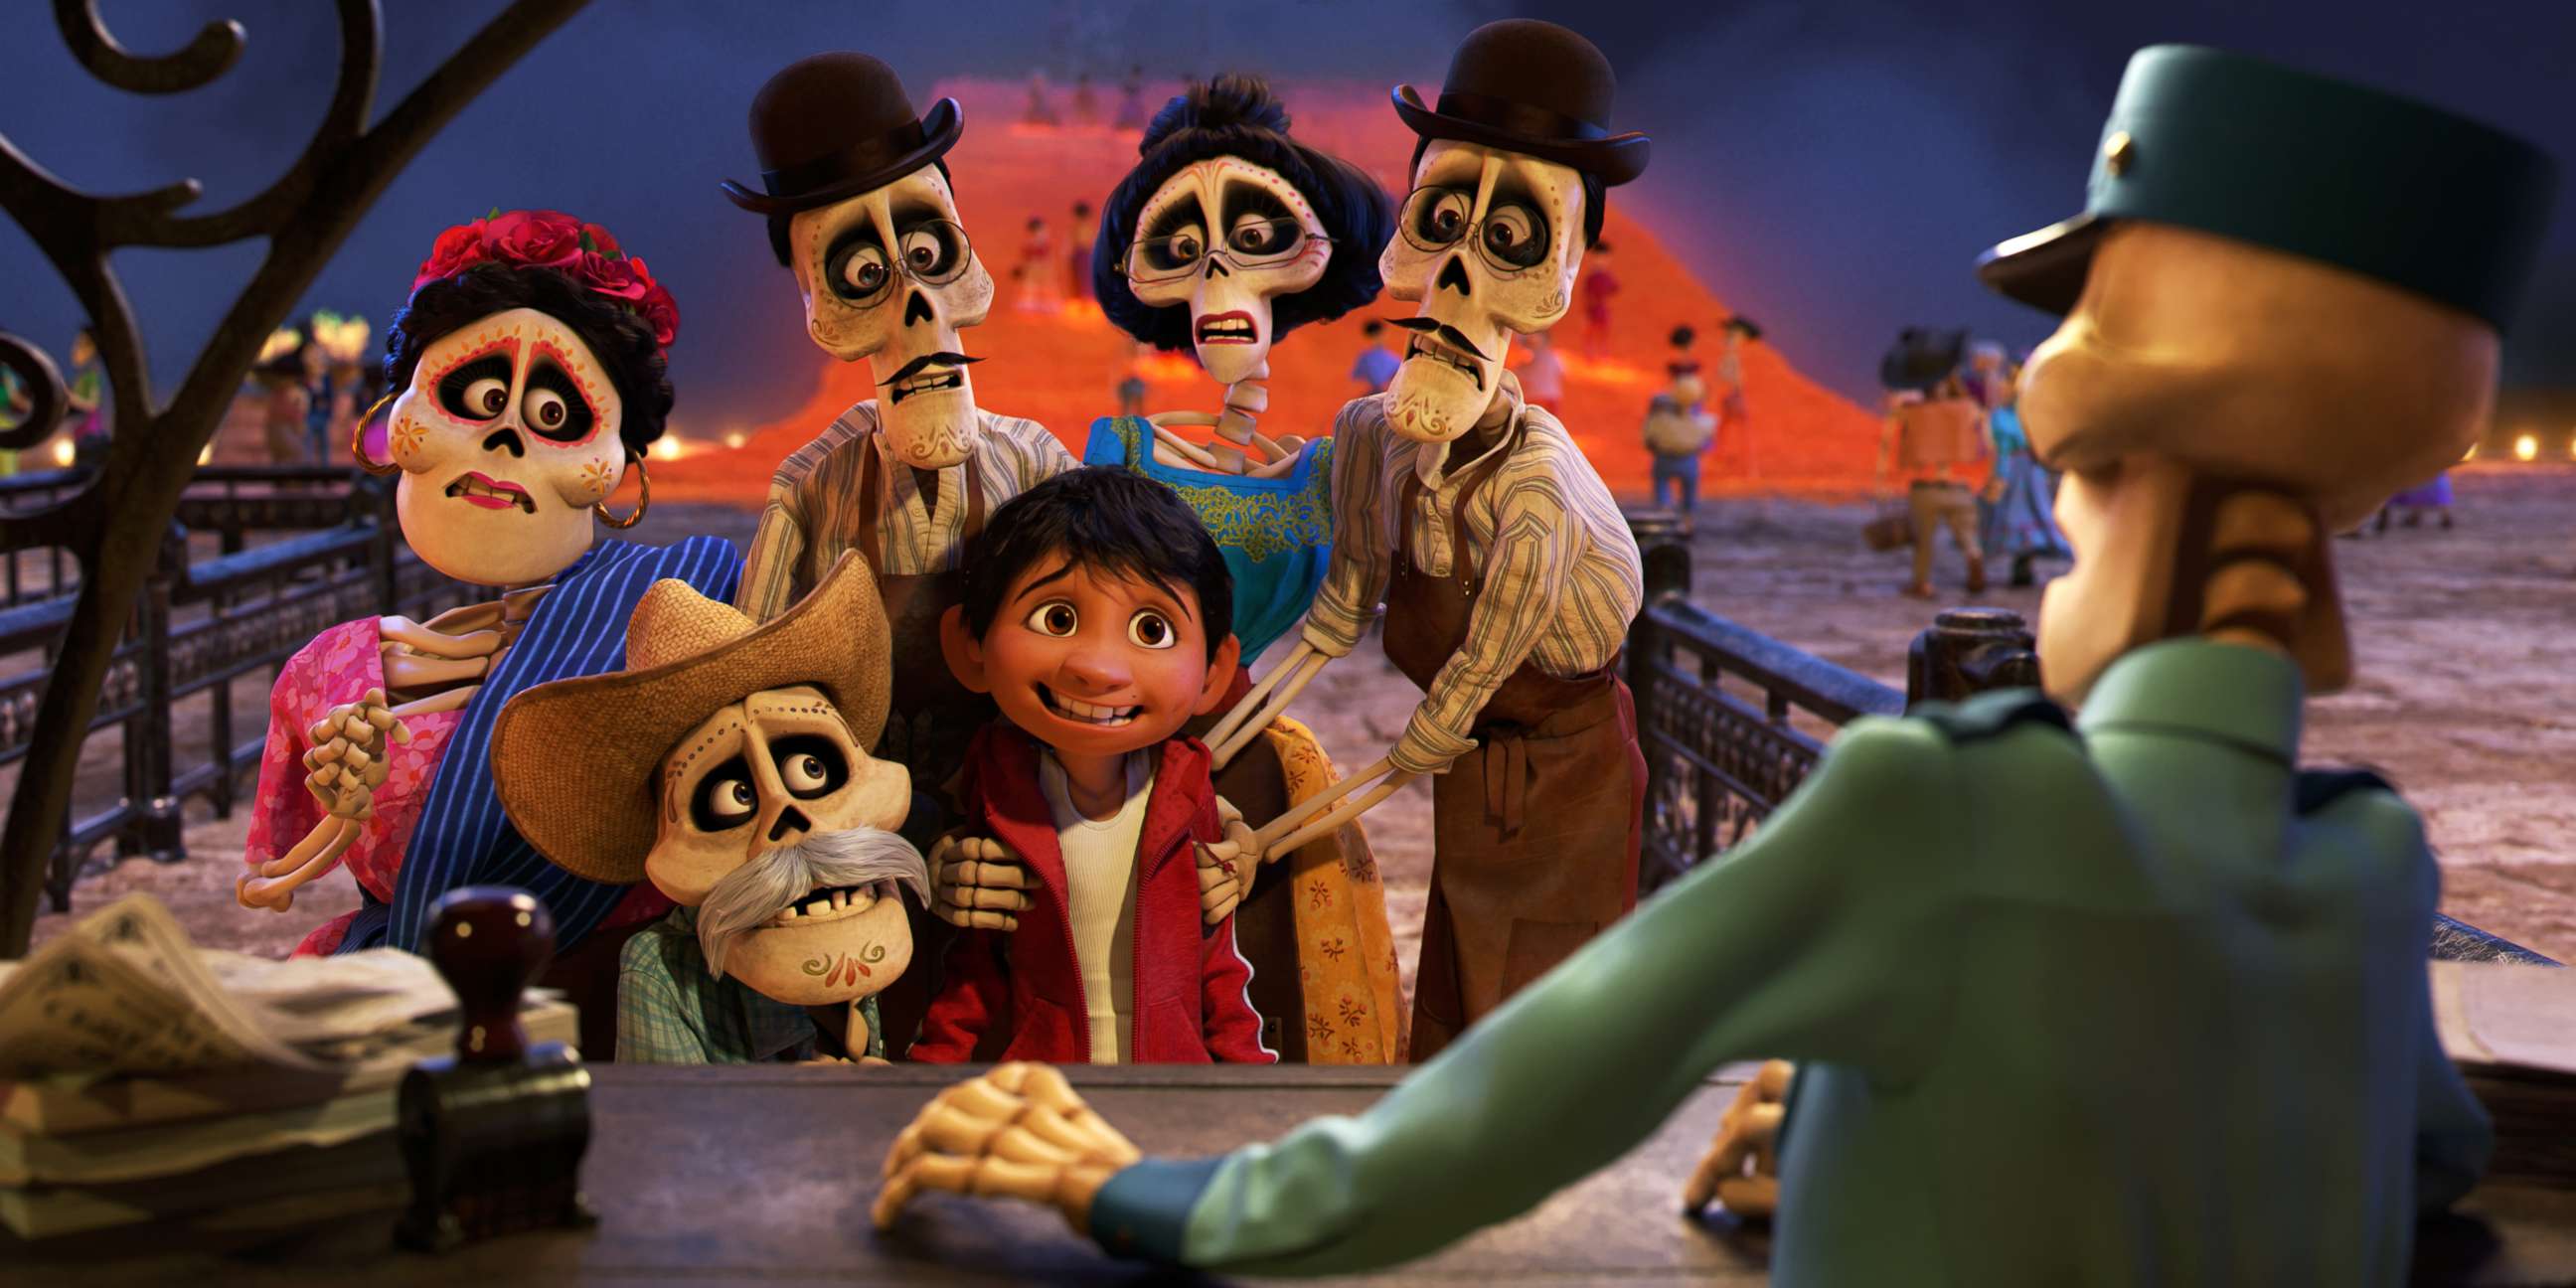 PHOTO: Disney/Pixar's animated film "Coco."